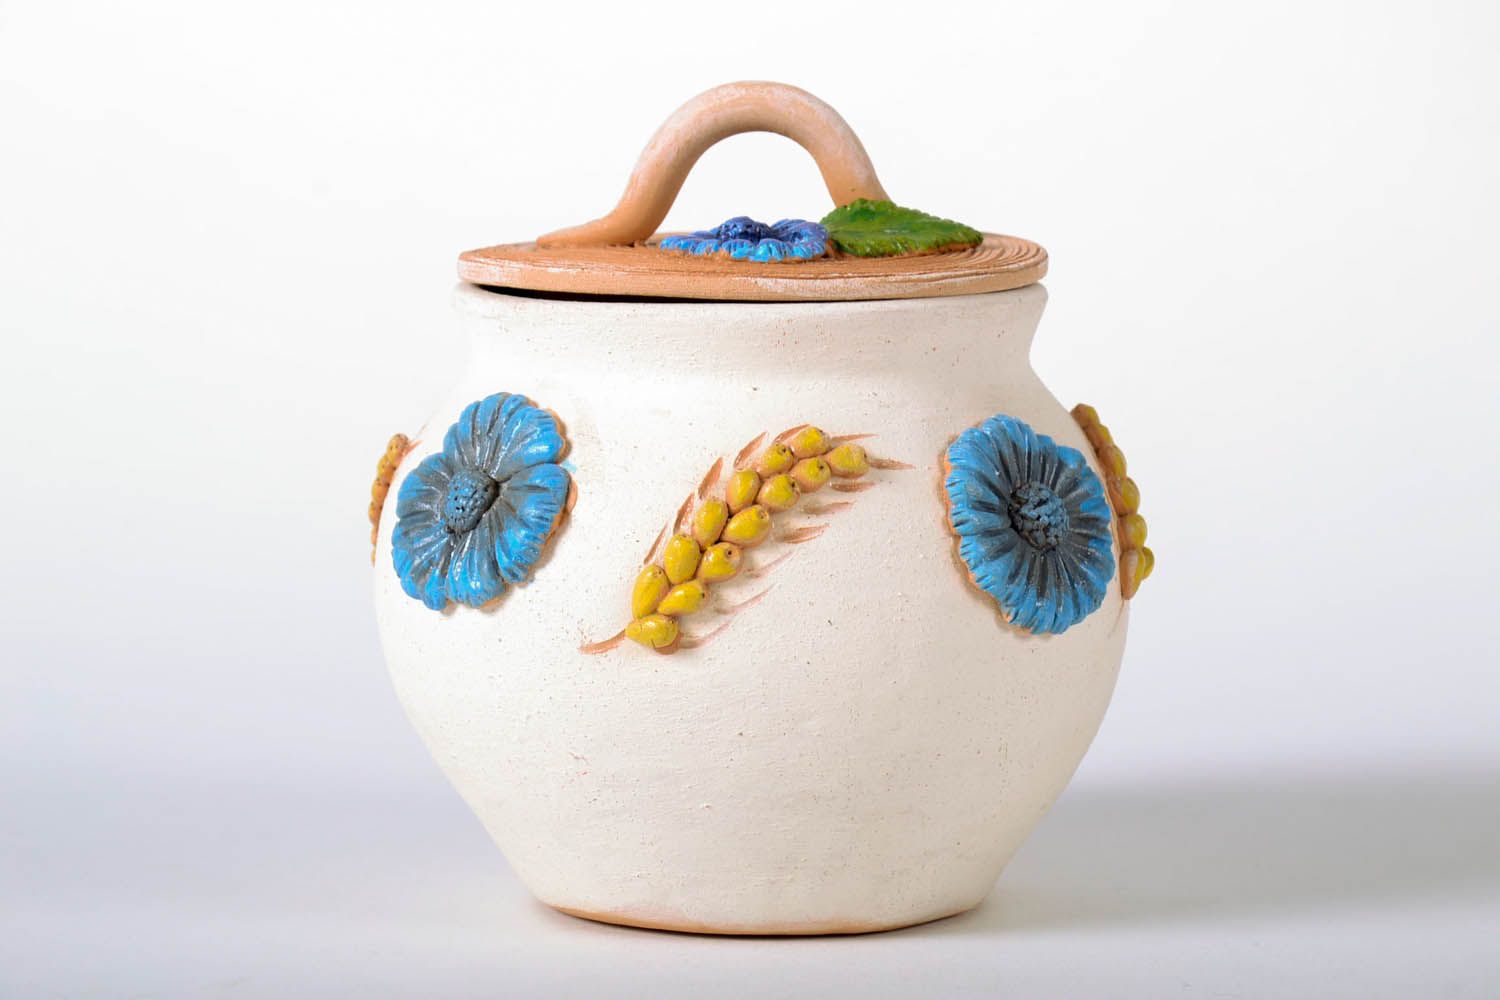 Pote de argila feito à mão com tampa louça de cerâmica decorativa artesanal foto 2